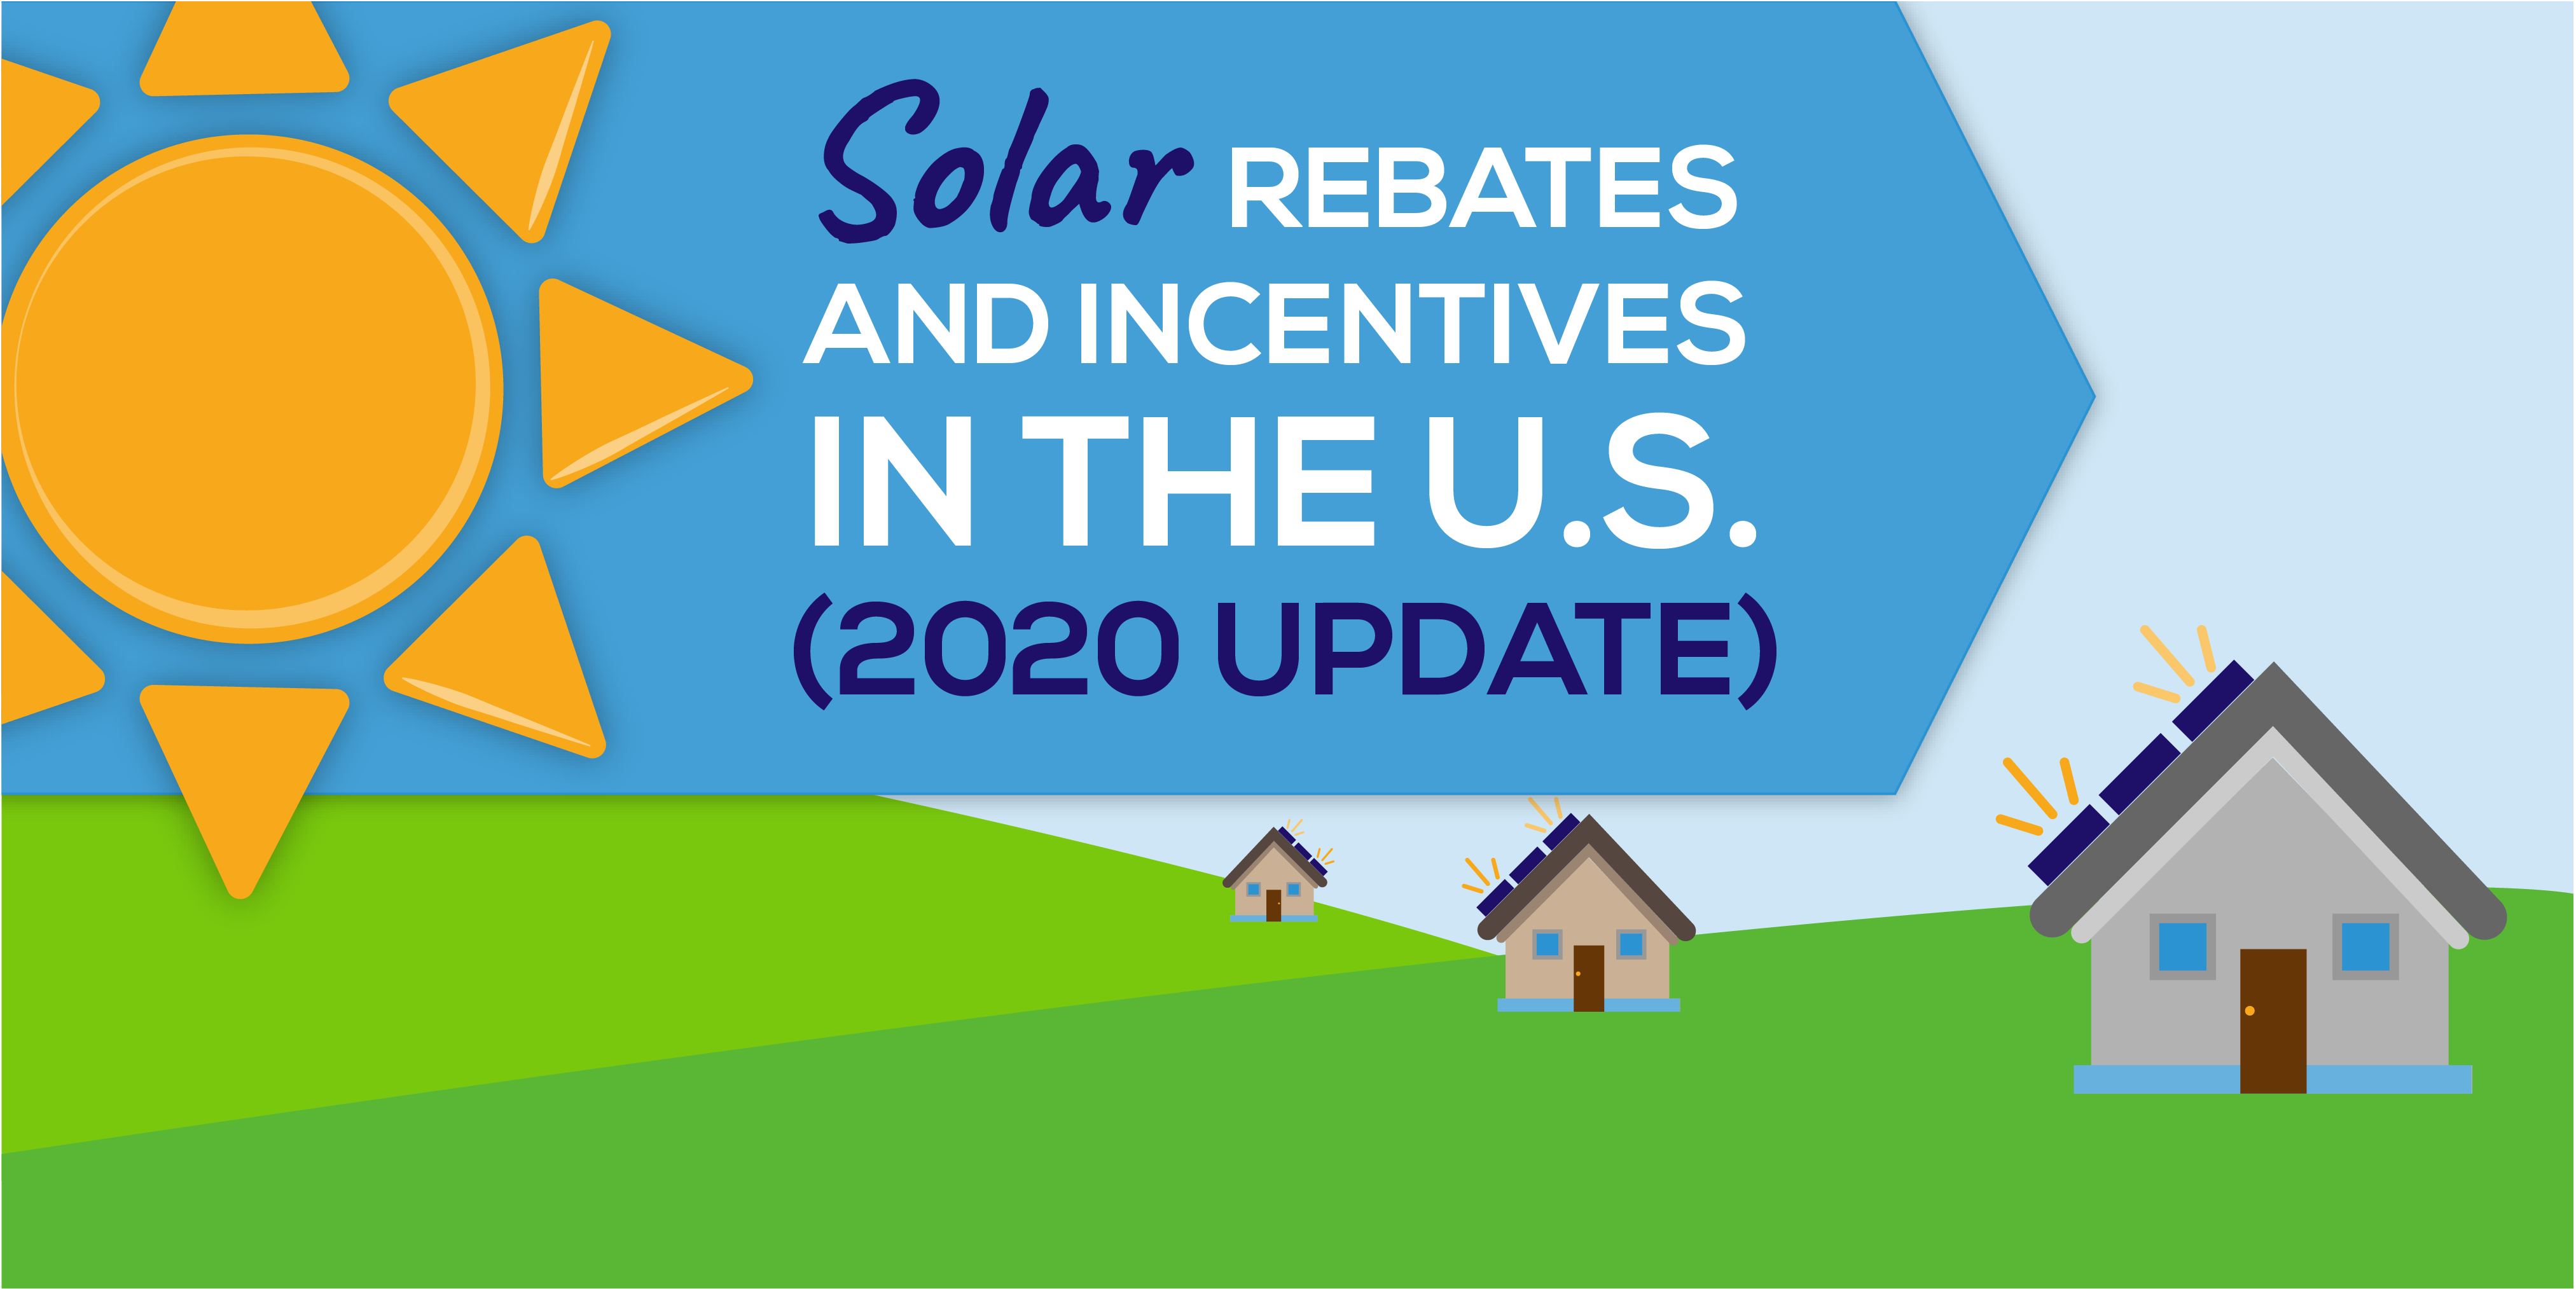 2020 Solar Rebates And Incentives Statistics